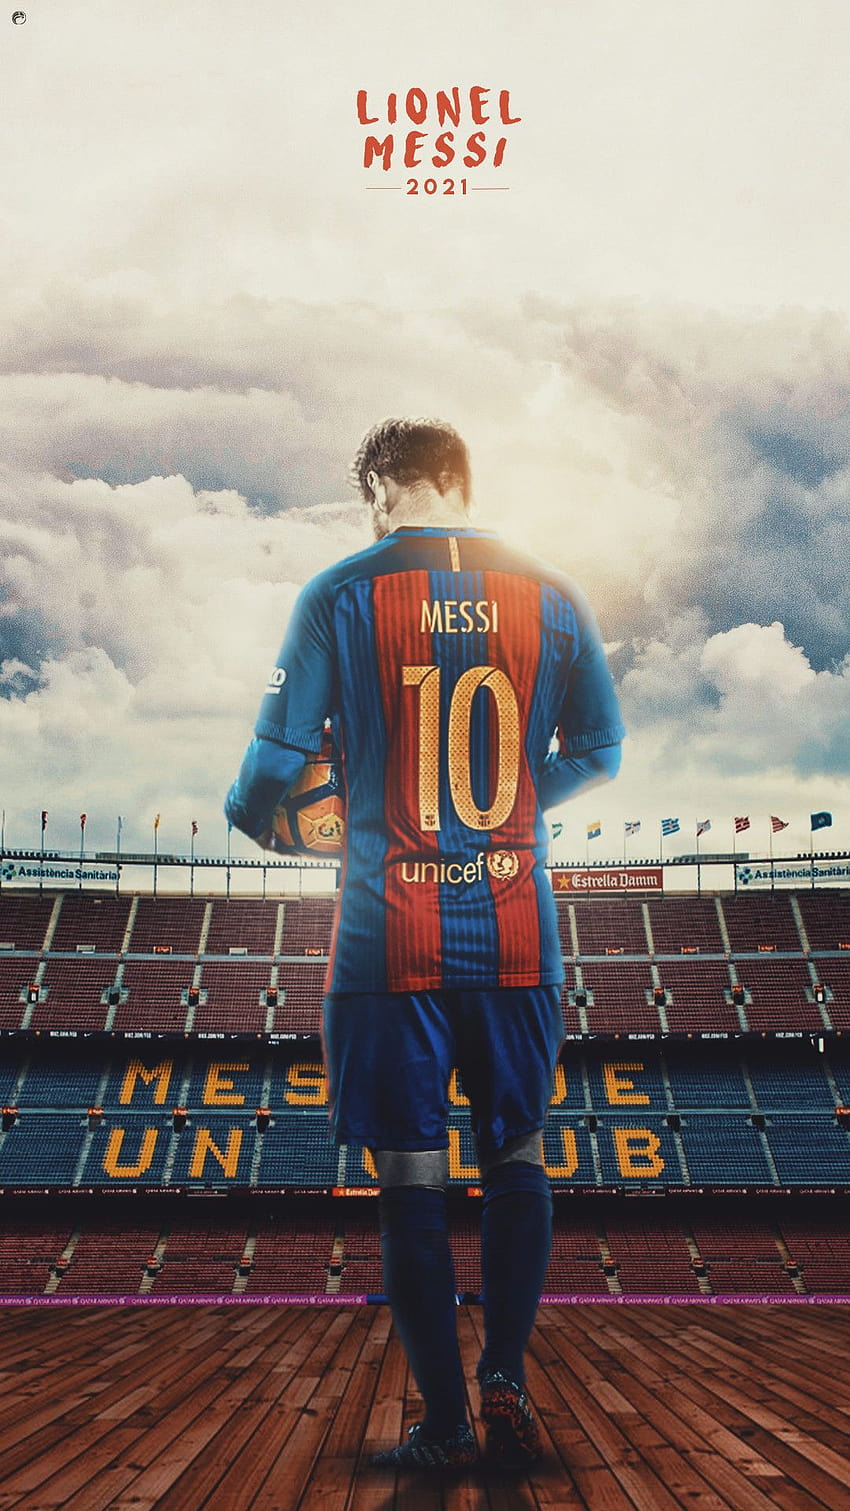 Sau khi chứng kiến Lionel Messi thi đấu vô cùng xuất sắc, bạn chắc chắn không muốn bỏ lỡ cơ hội sắp tới tại World Cup